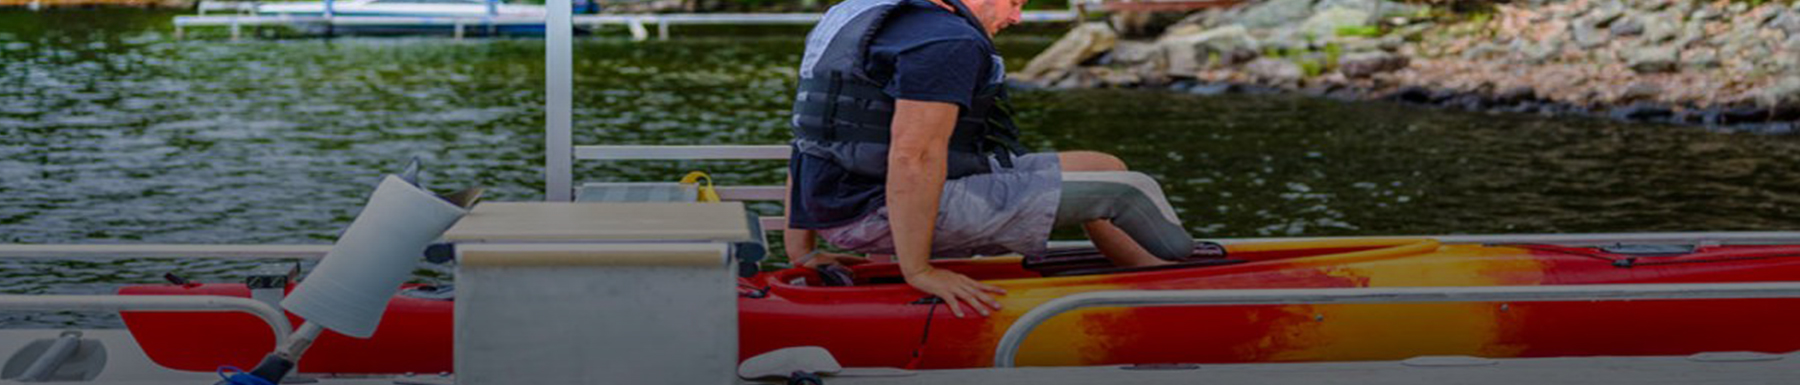 Hombre preparándose para sentarse en el kayak